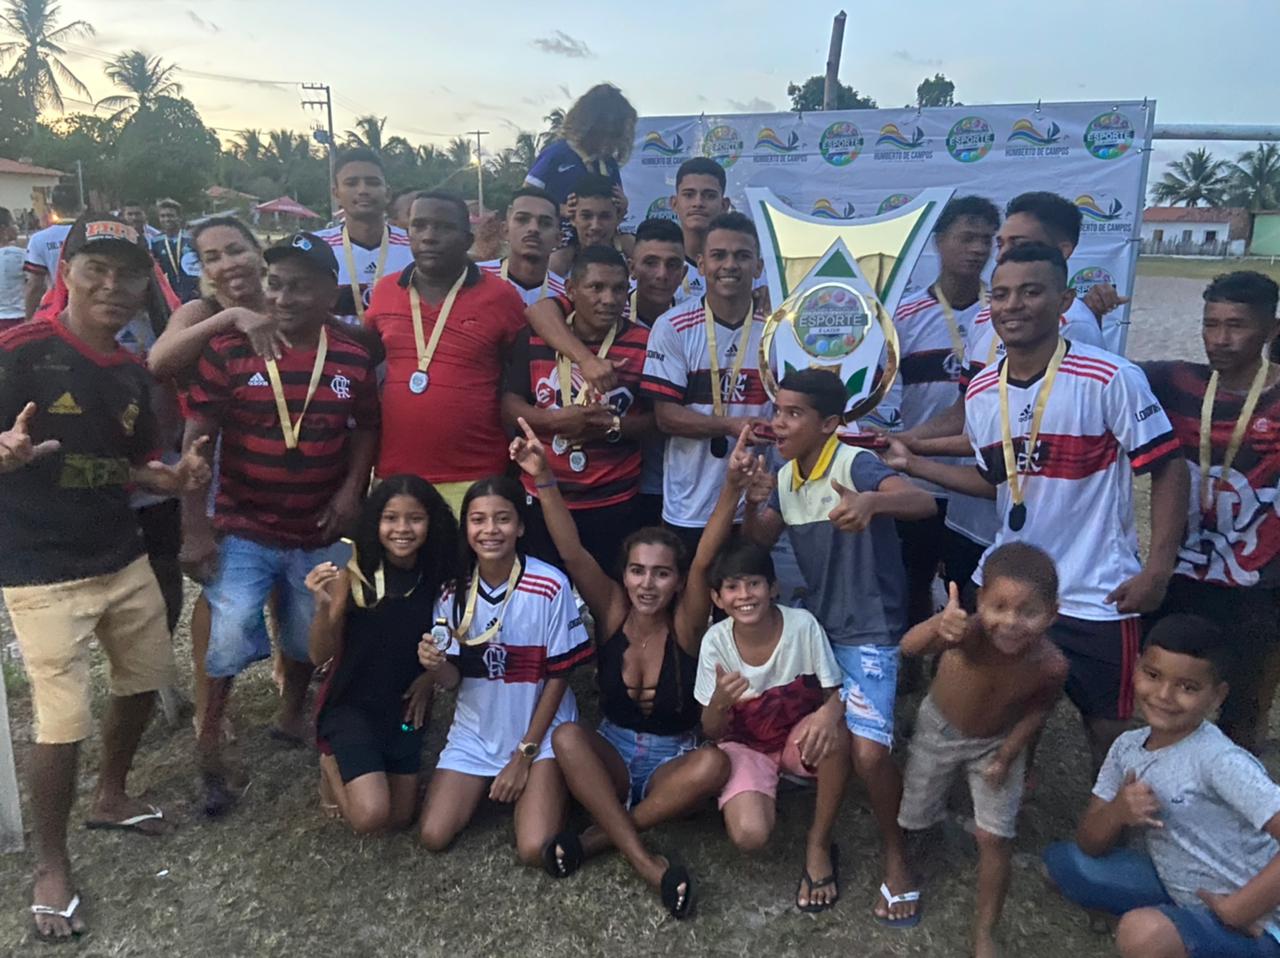 Esporte: Prefeitura de Humberto de Campos realiza campeonato de futebol amador com diversas premiações